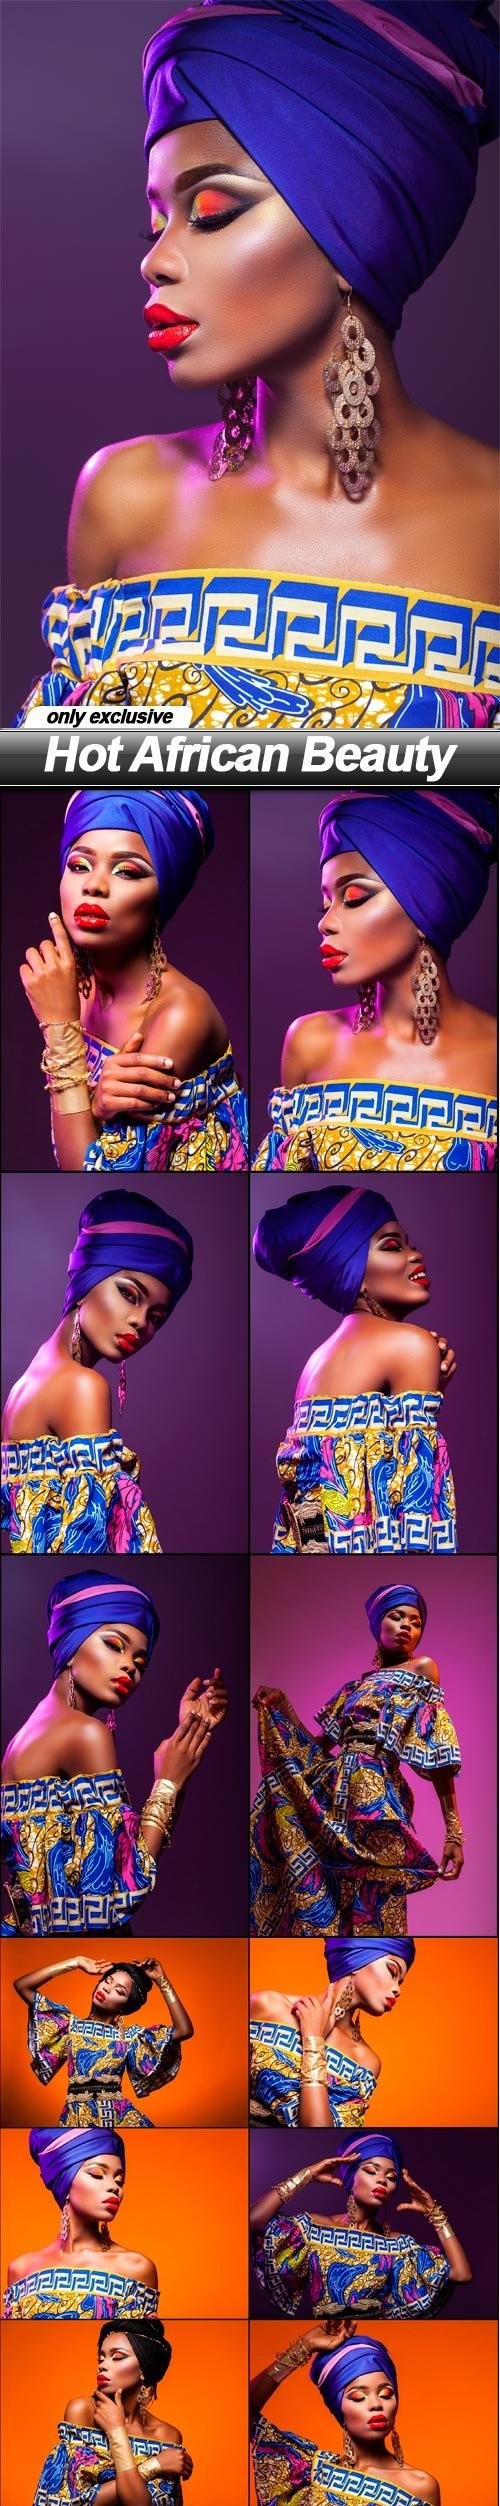 Hot African Beauty - 15 UHQ JPEG